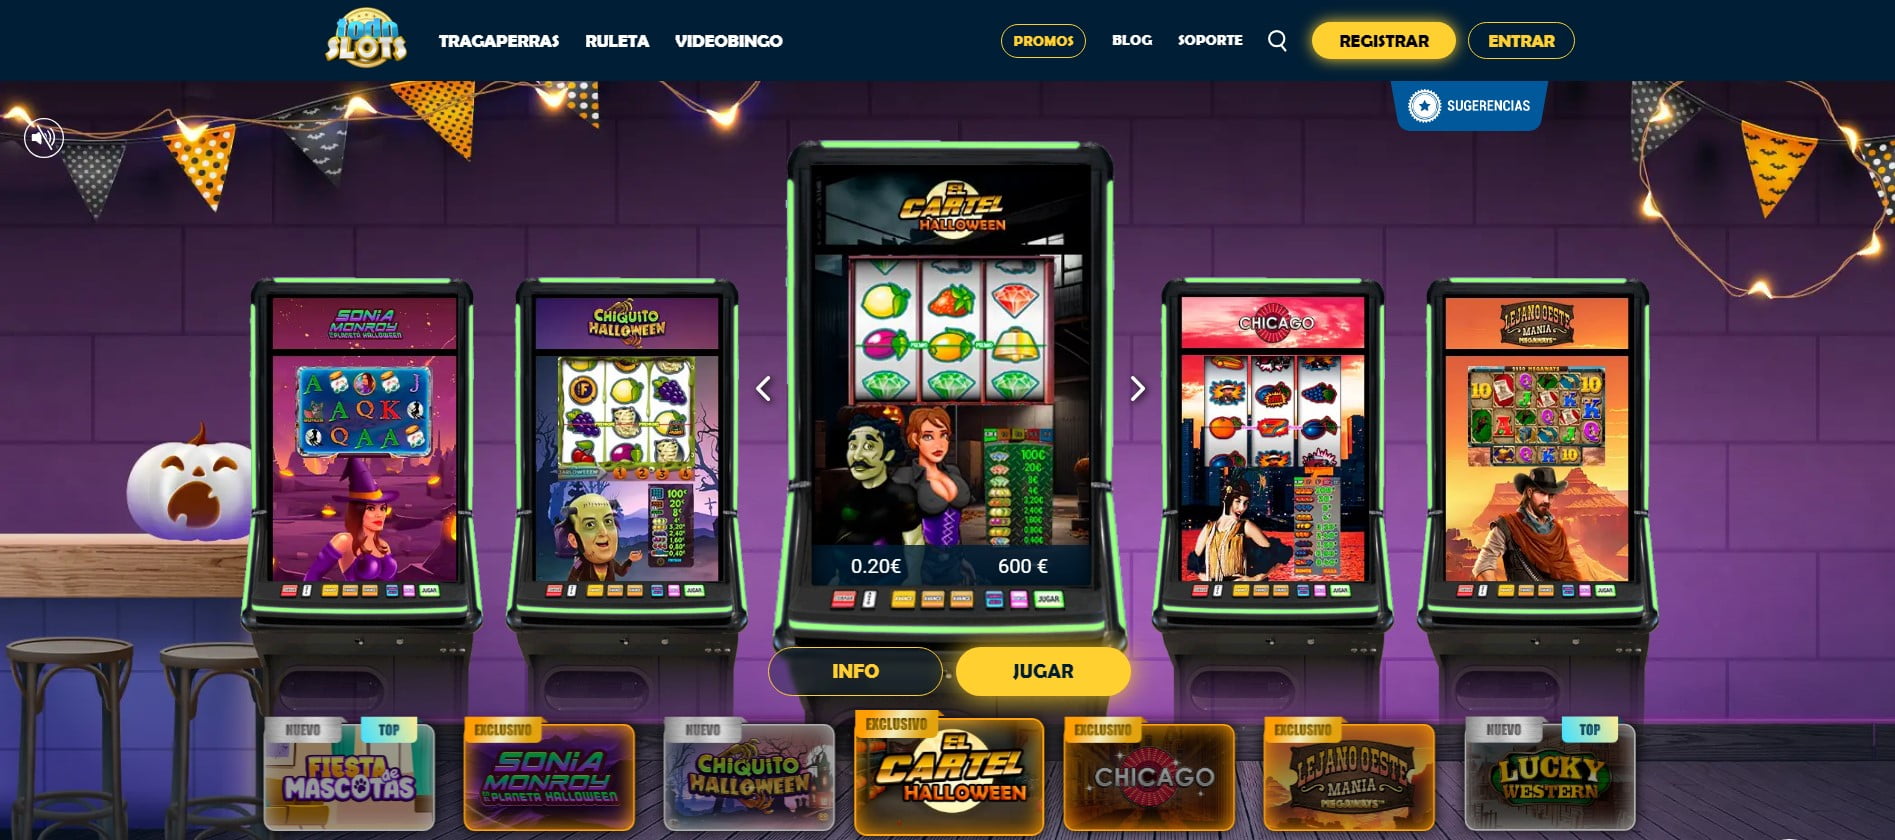 TodoSlots casino: Información sobre bonos y promociones